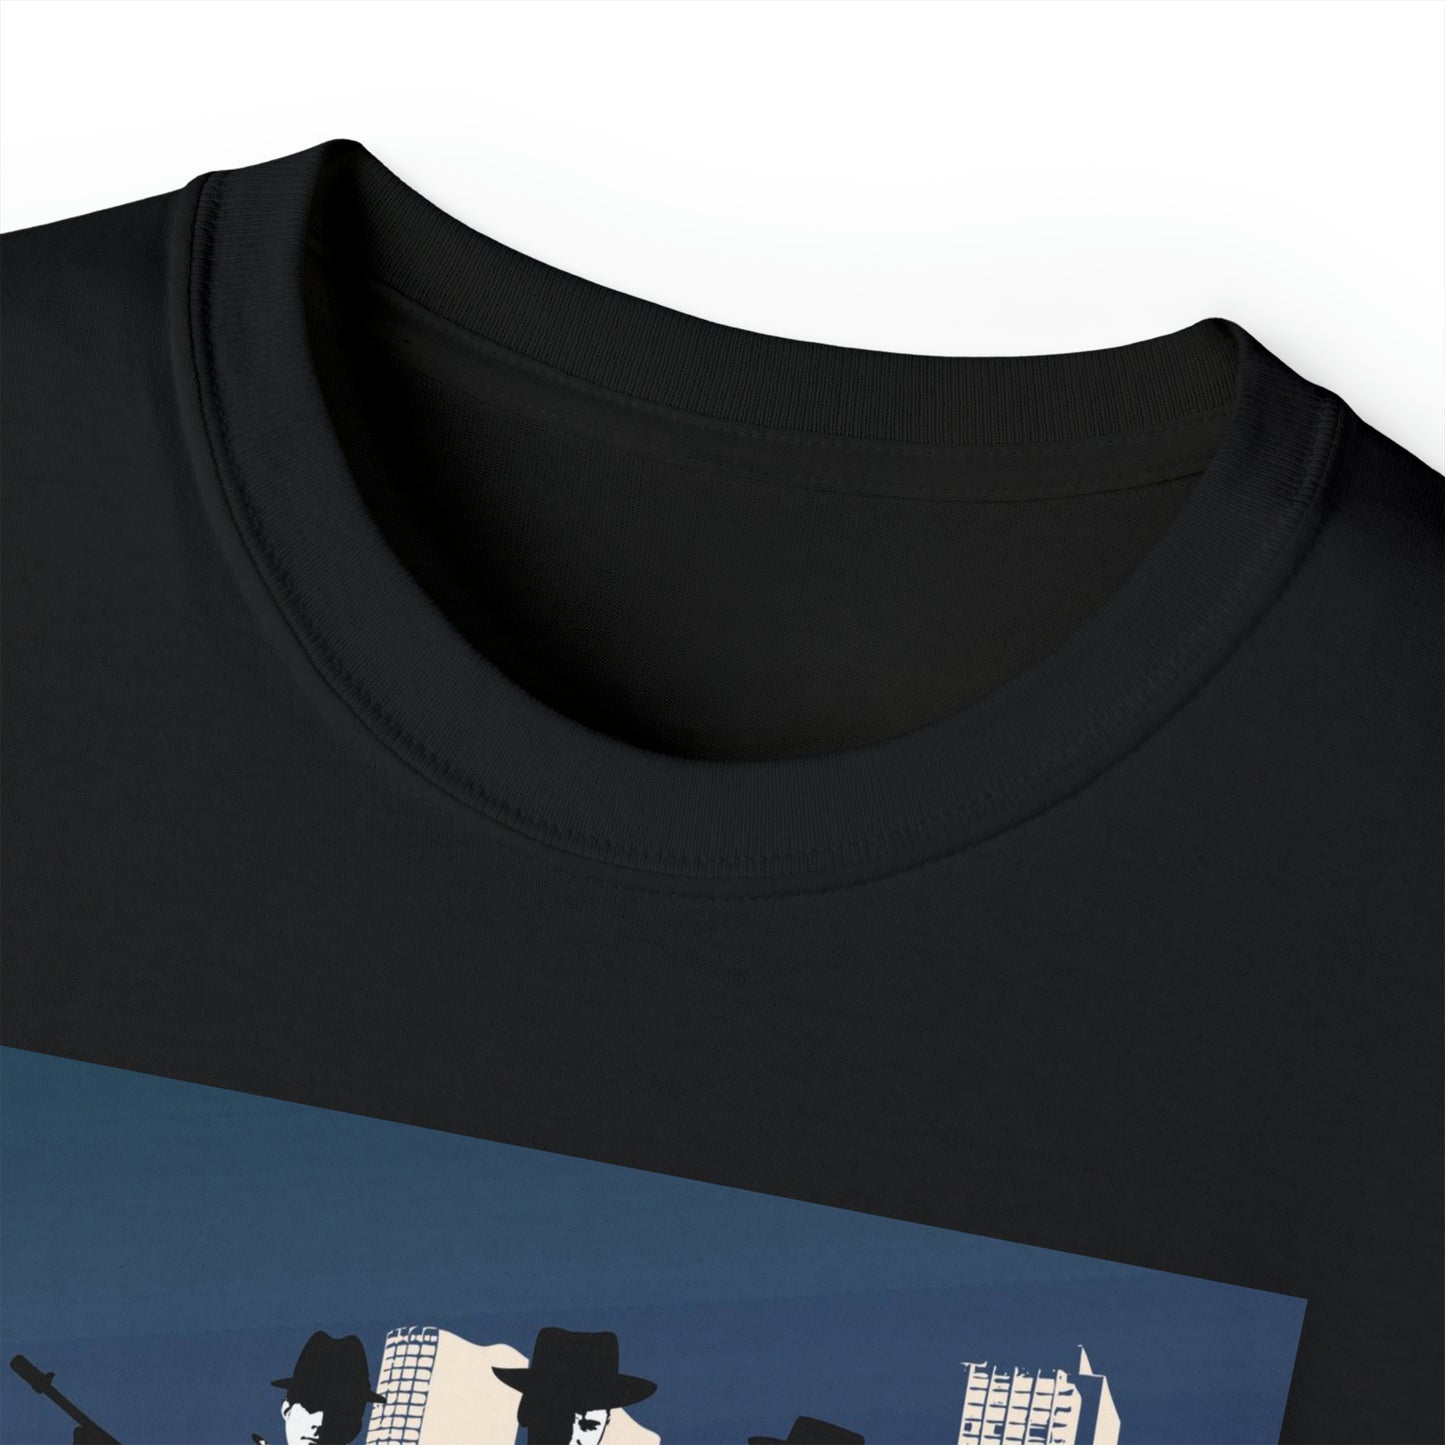 Stray Dog Blues - Unisex T-Shirt